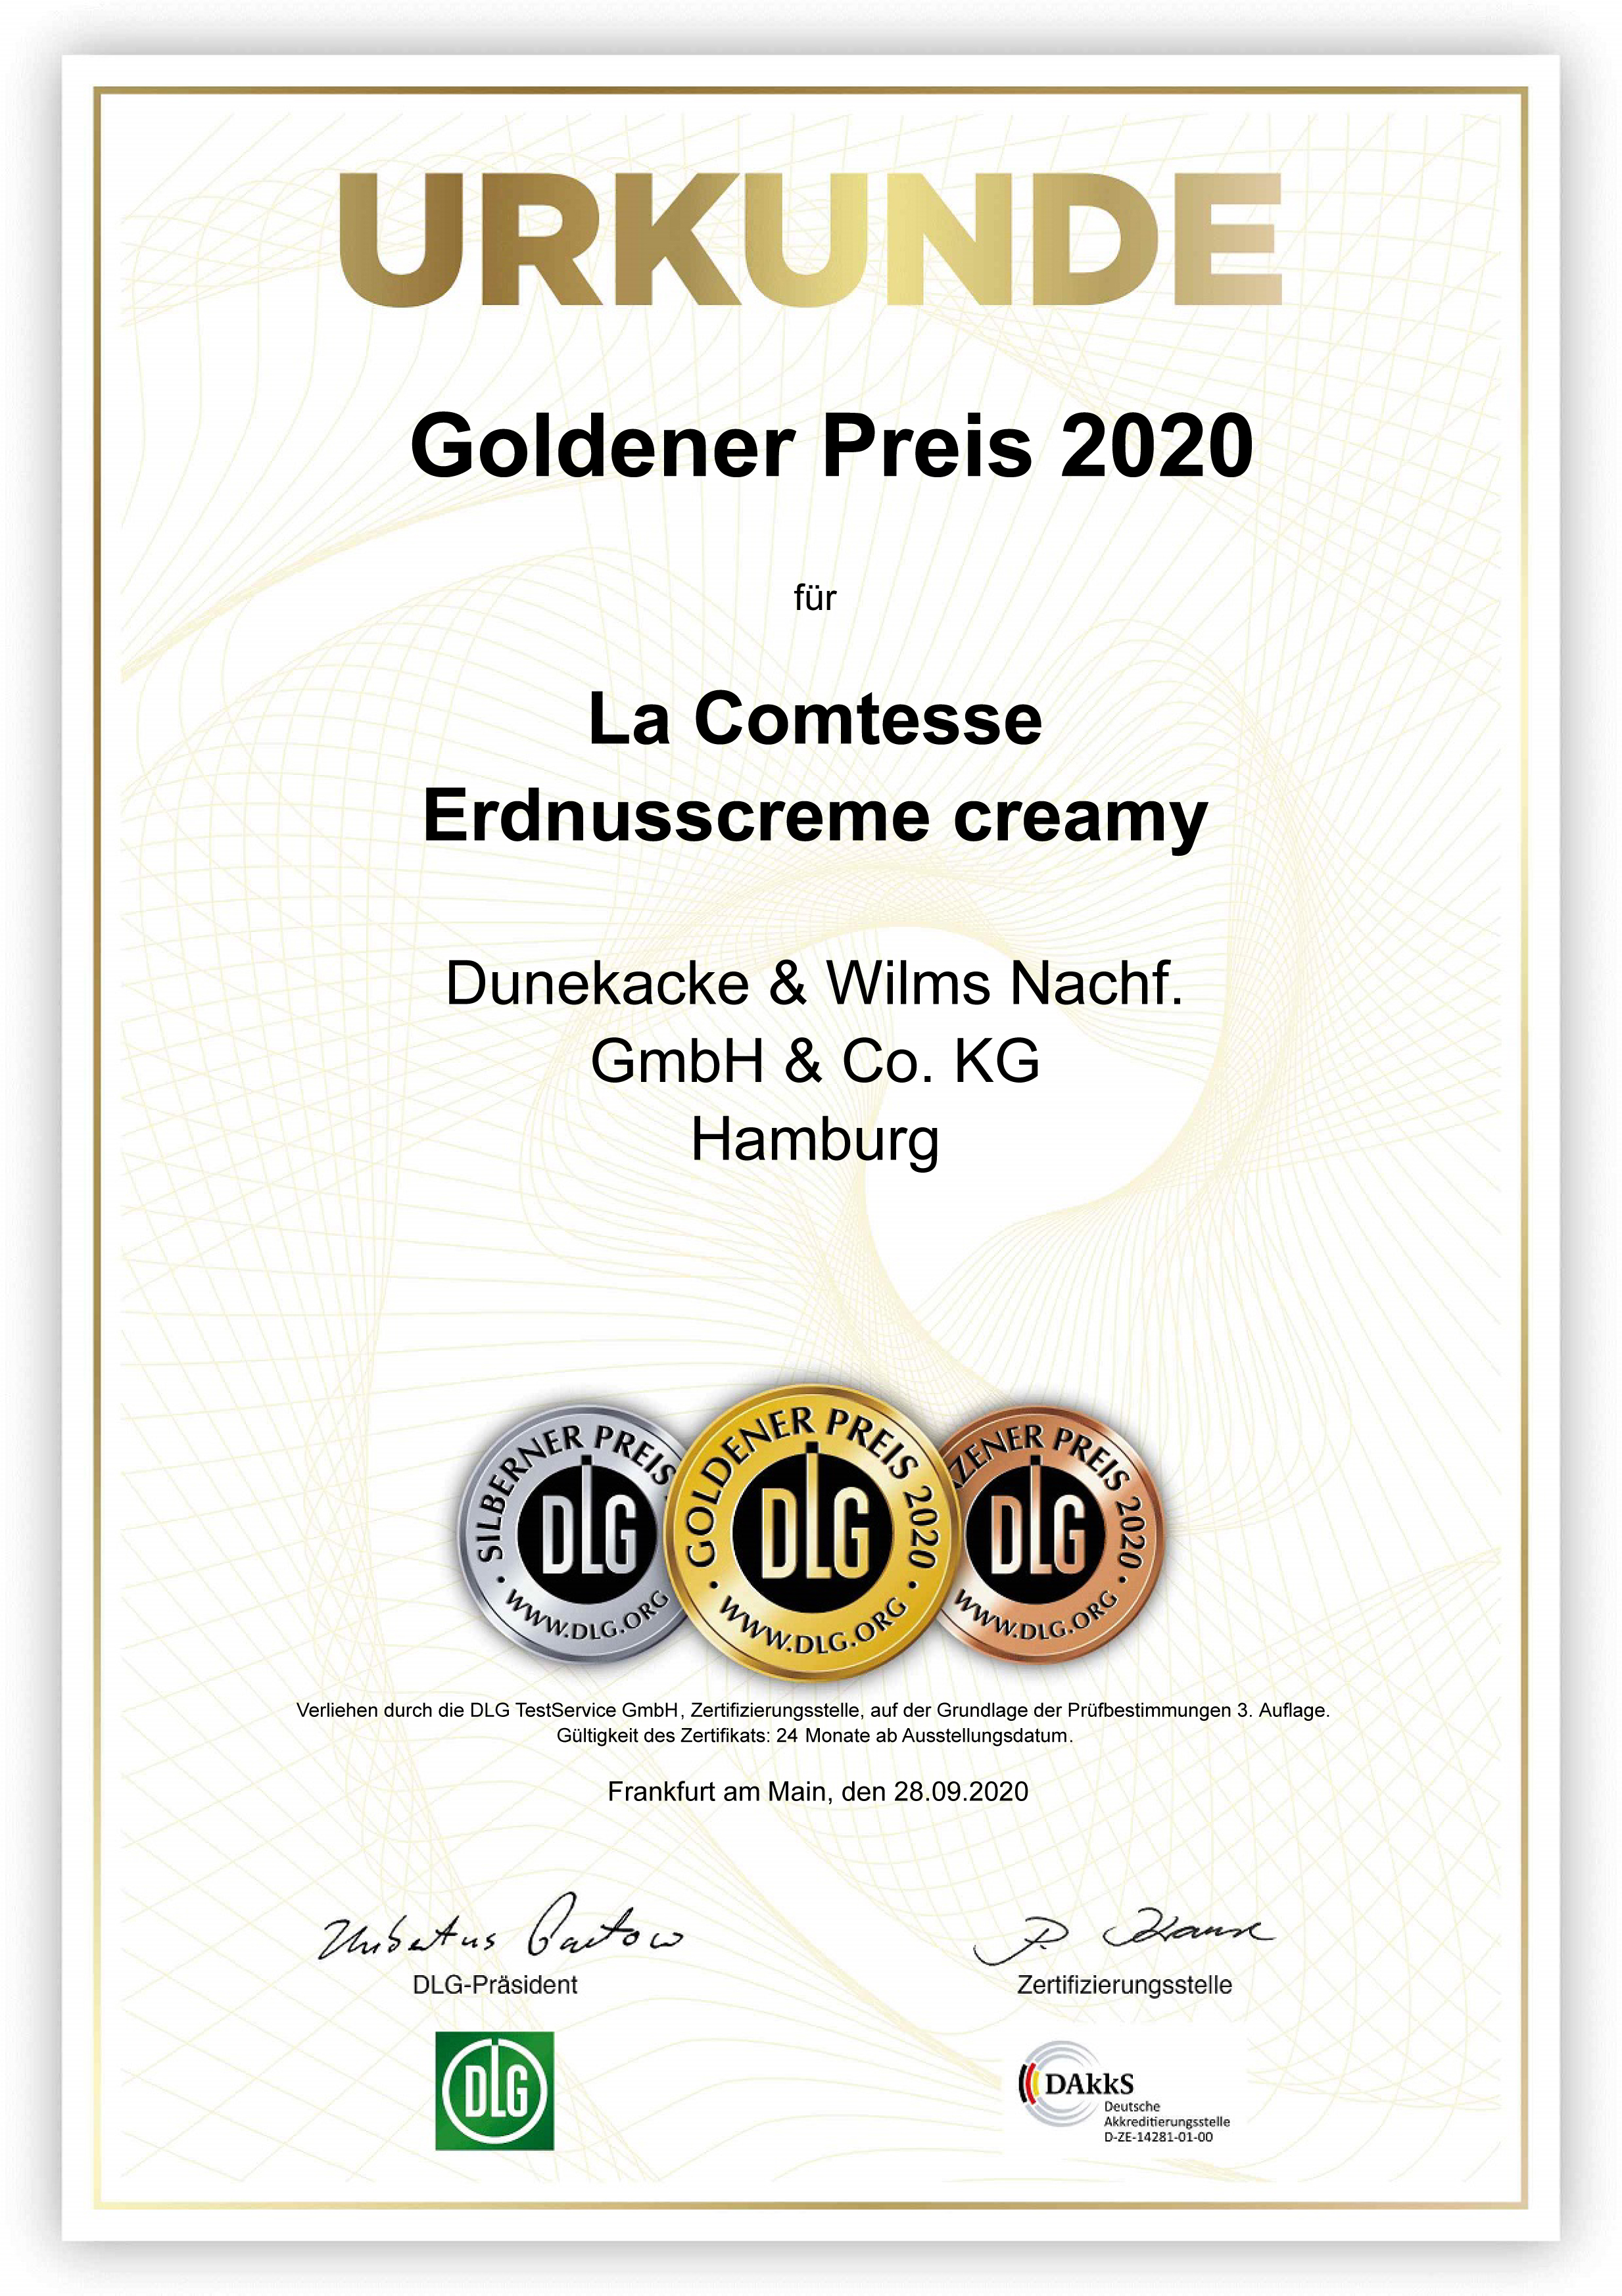 DLG-Pramierung GOLD, Erdnusscreme creamy 2020, jetzt neu: Ausgezeichnete Qualität seit 2017